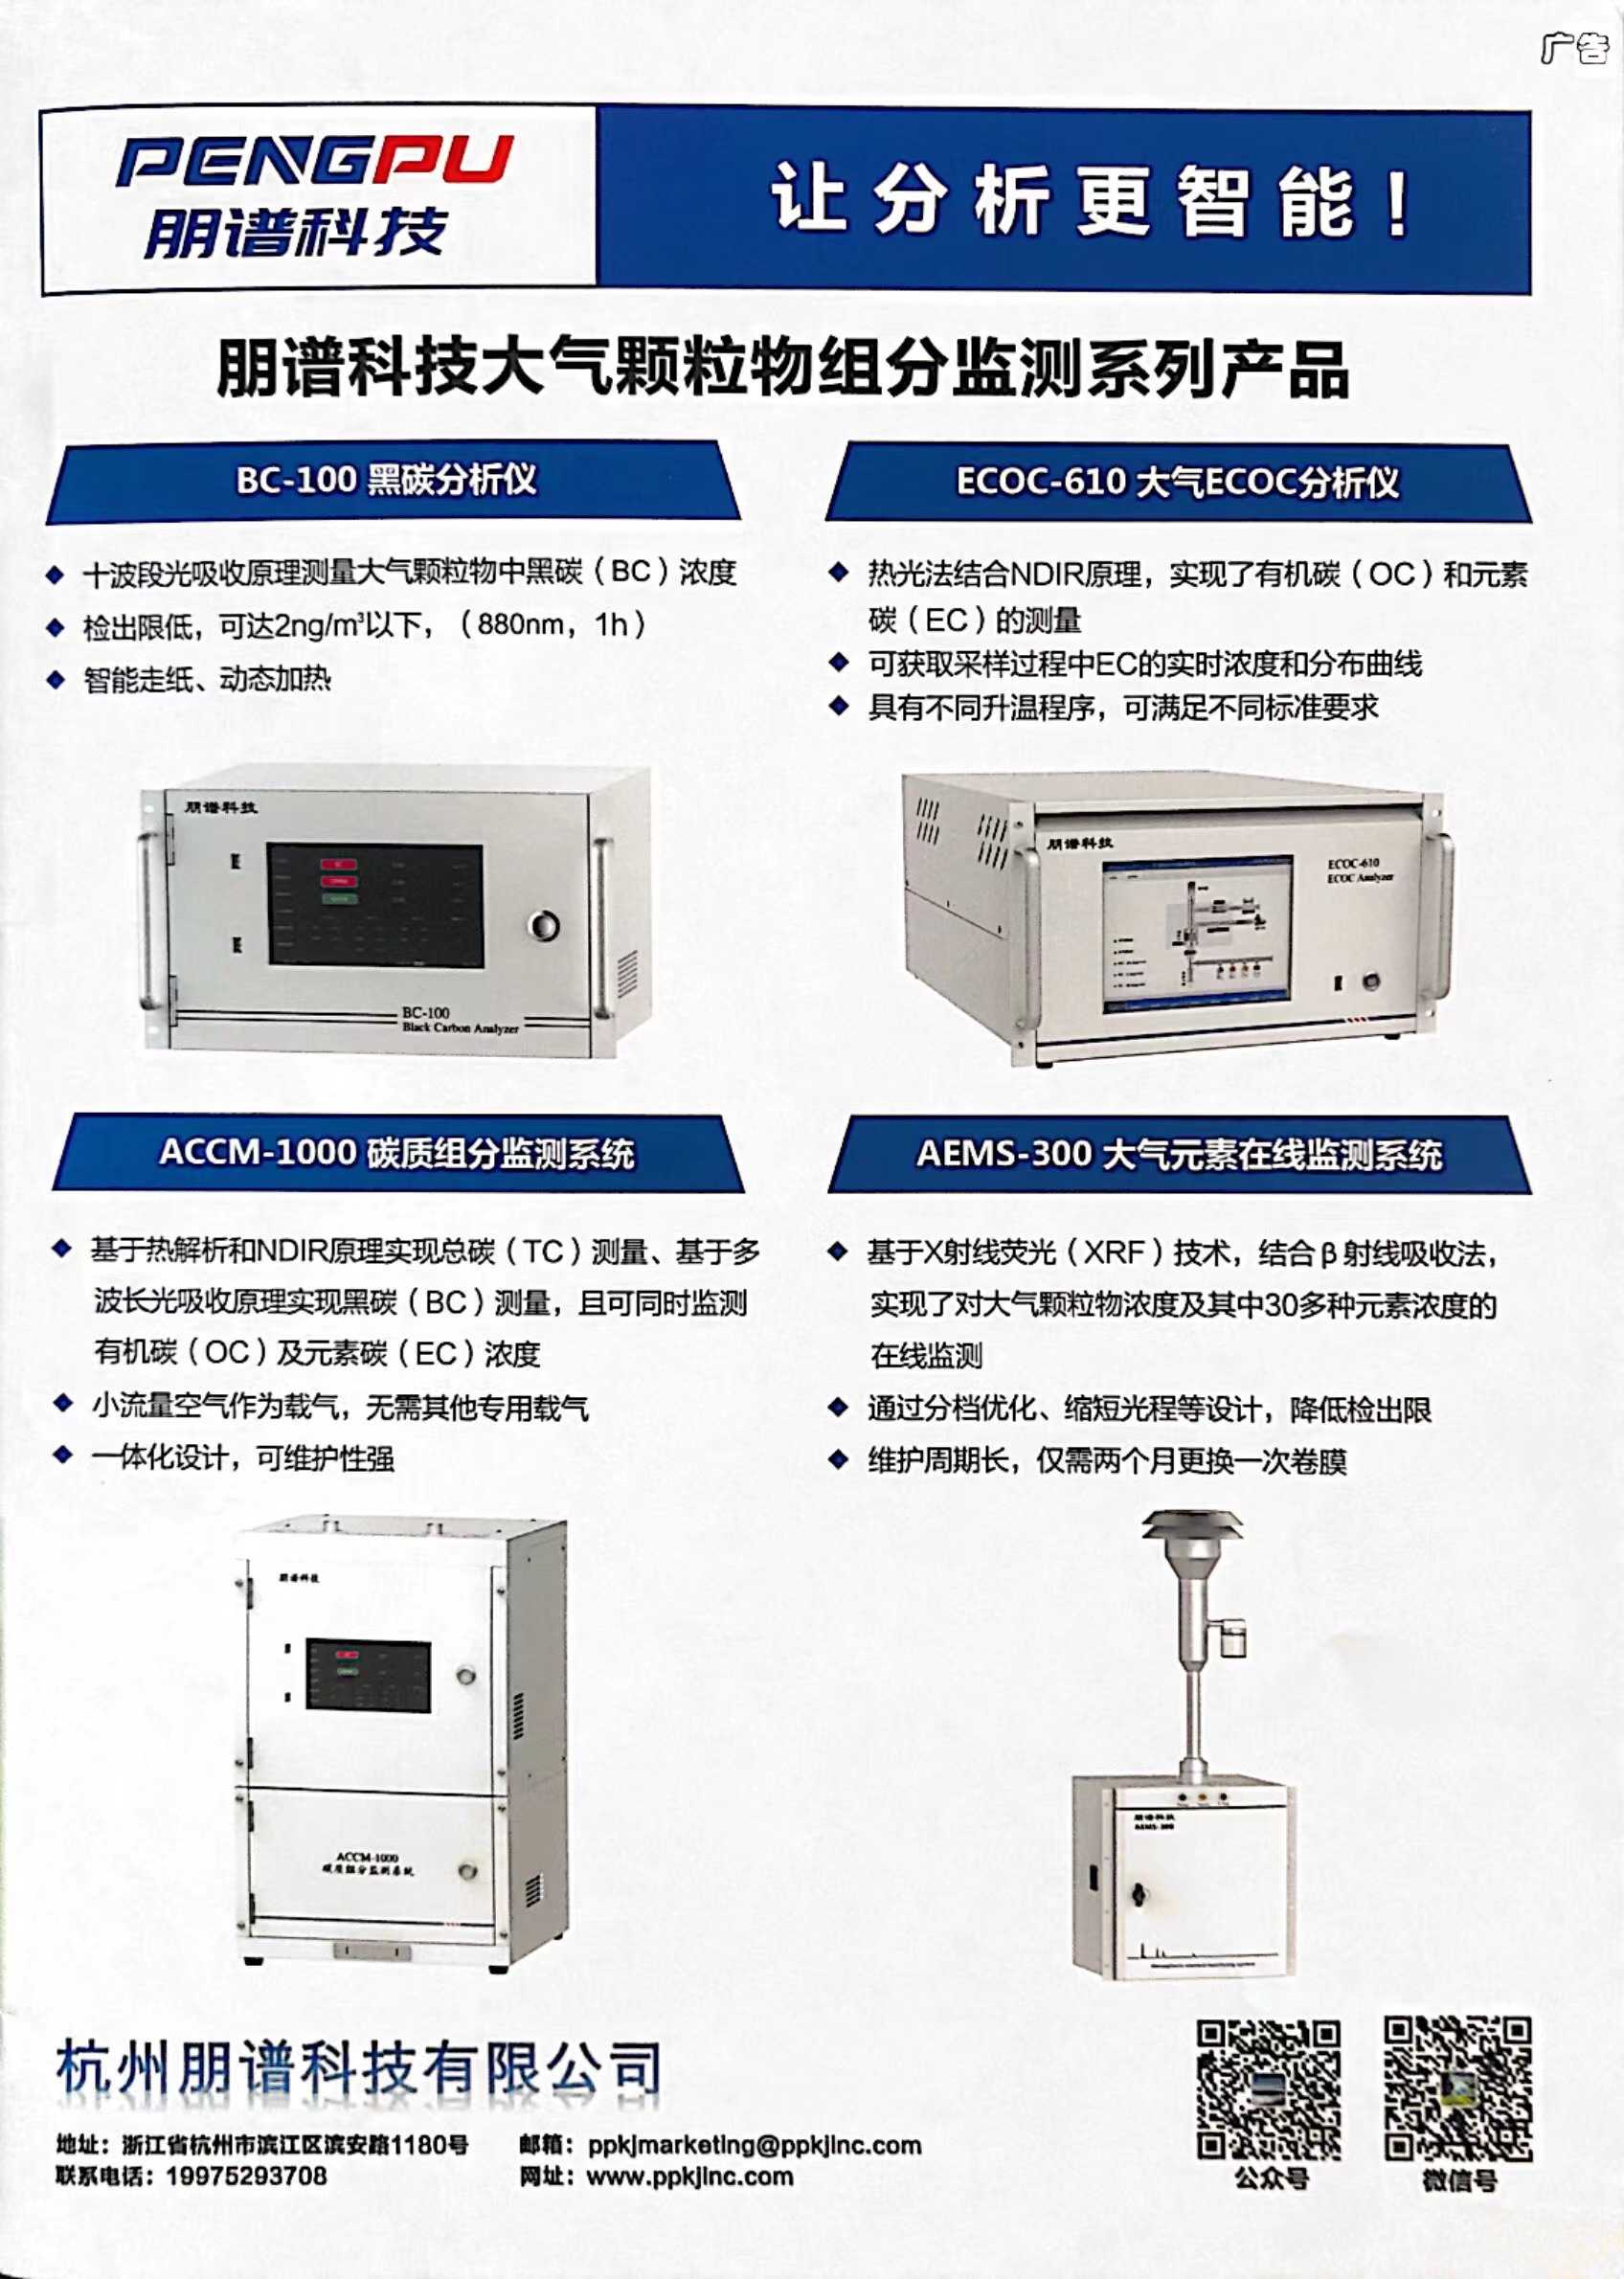 朋谱科技大气颗粒物组分监测系列产品在核心期刊《中国环境监测》上刊登